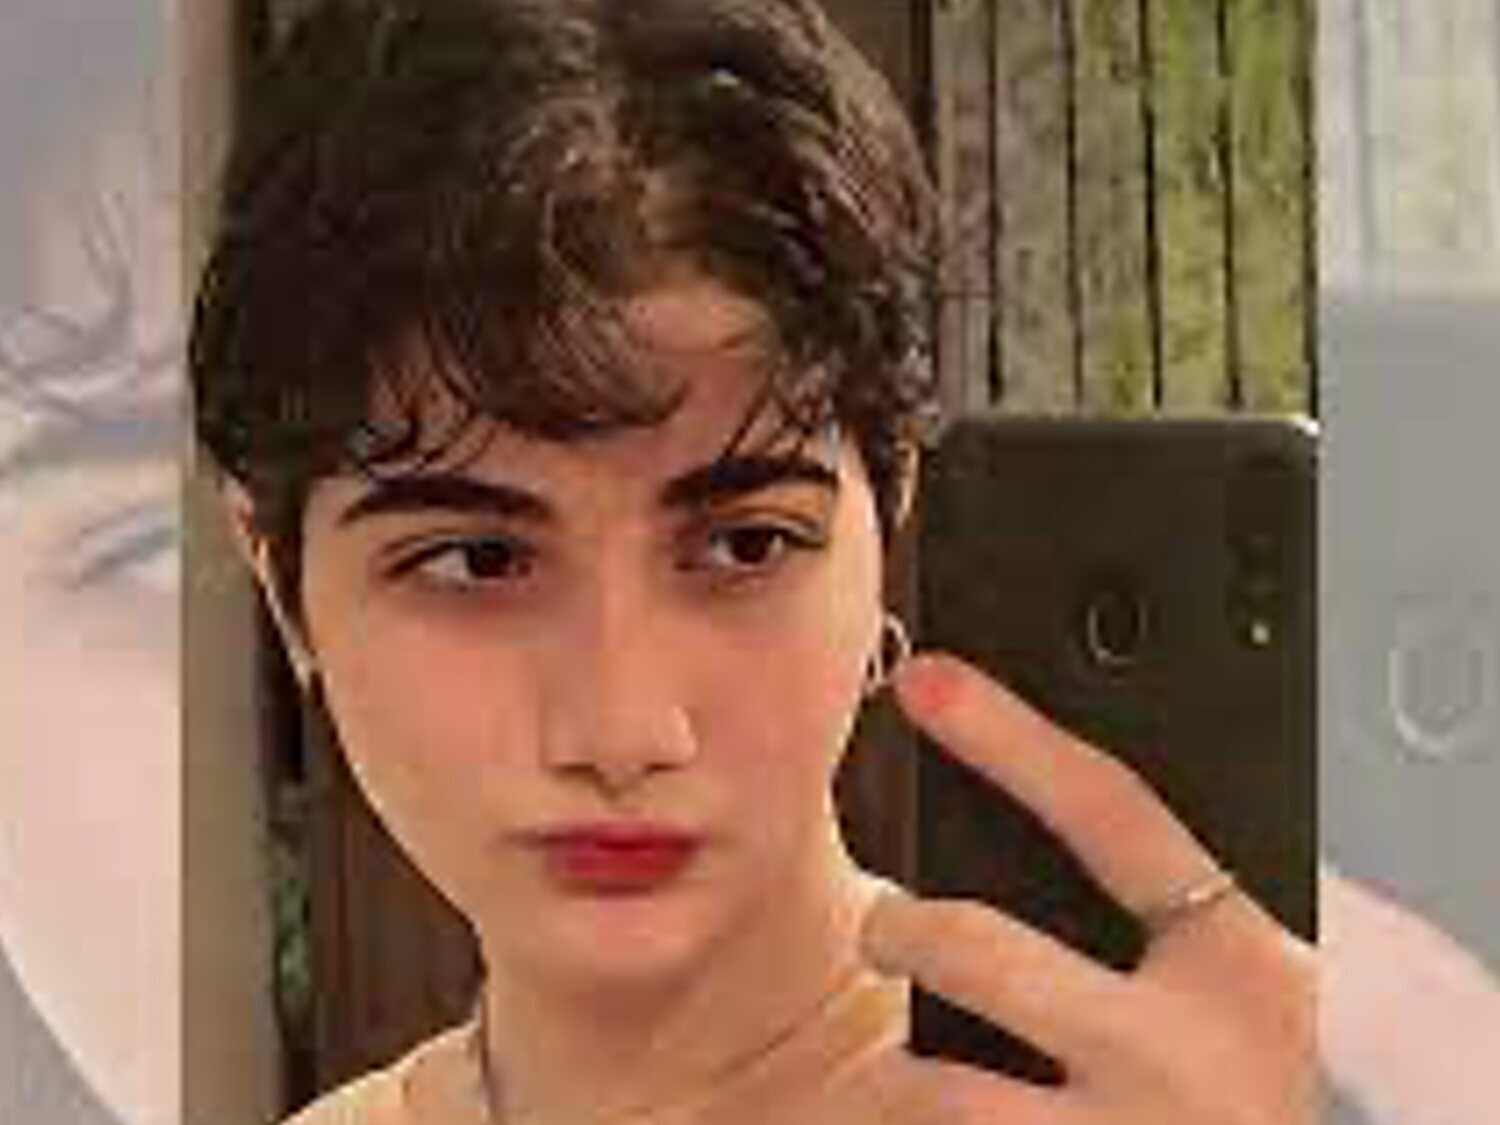 Muere con 16 años Armita Garavand, la joven iraní agredida en el Metro de Teherán por no usar velo